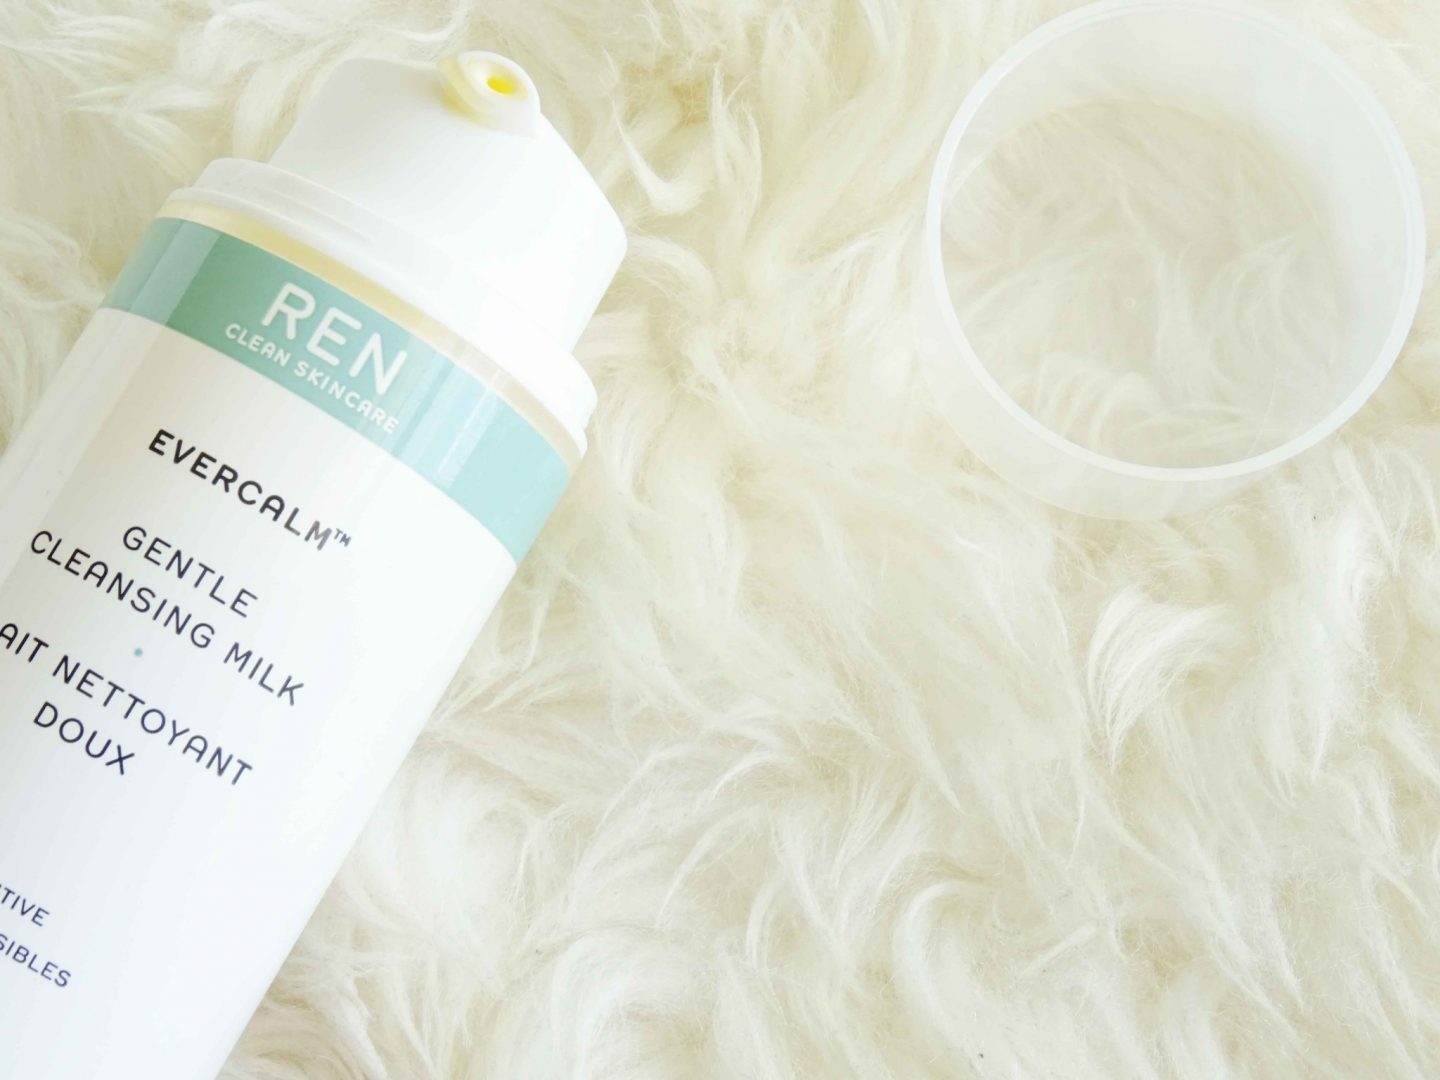 Evercalm Gentle cleansing milk de Ren | Review